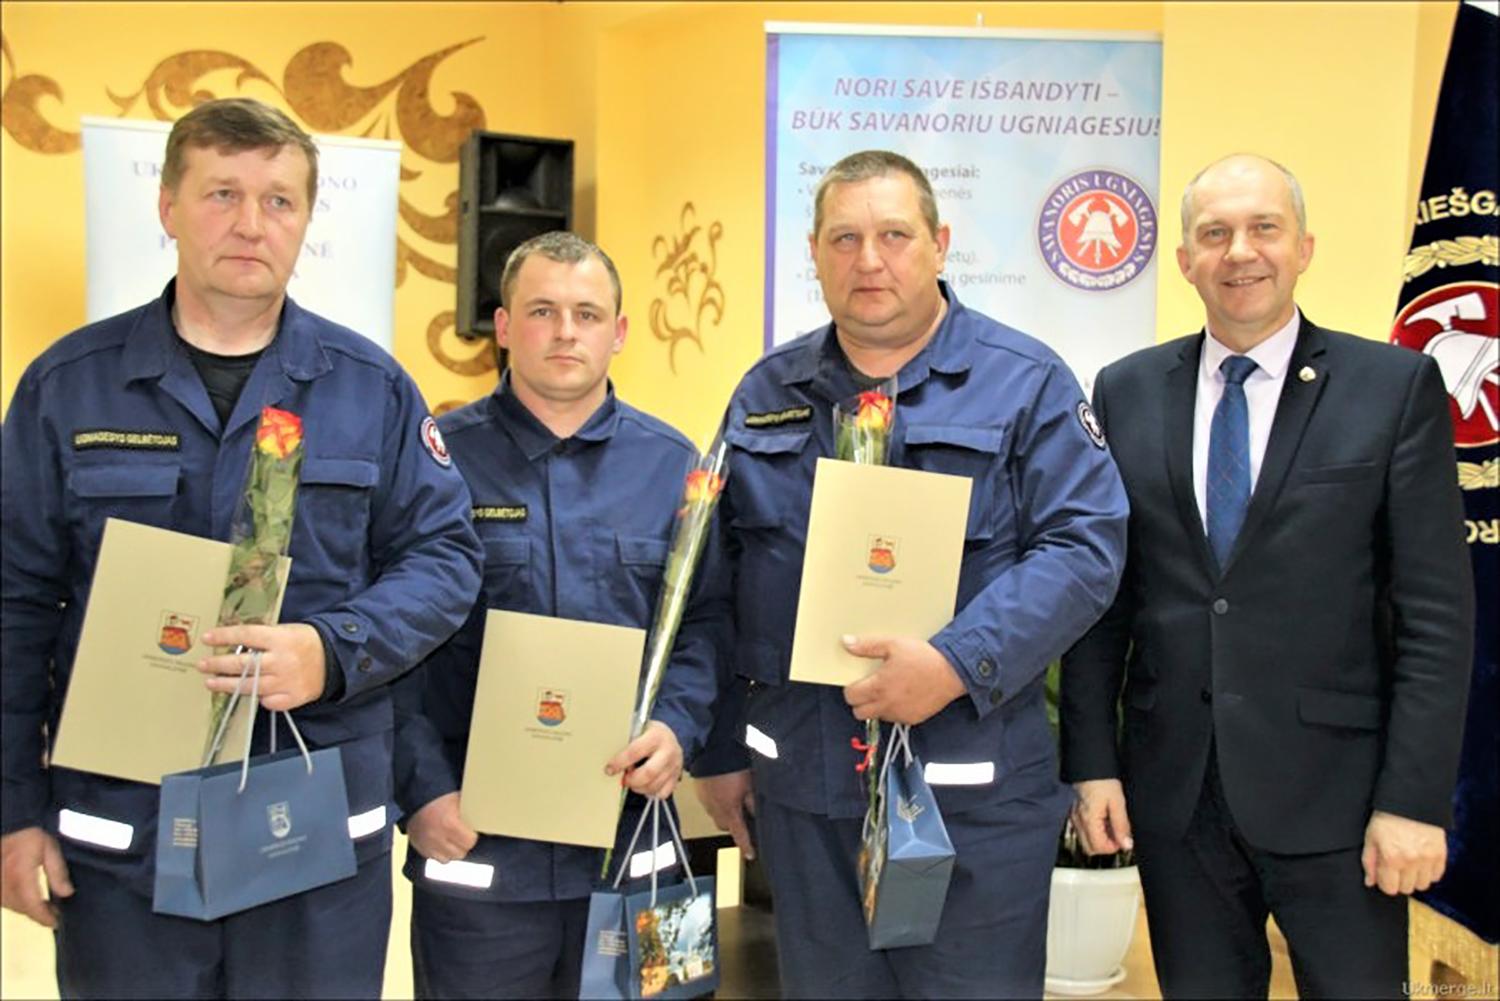 Rajono ugniagesiai paminėjo profesinę šventę / Su profesine švente sveikino rajono meras Rolandas Janickas.